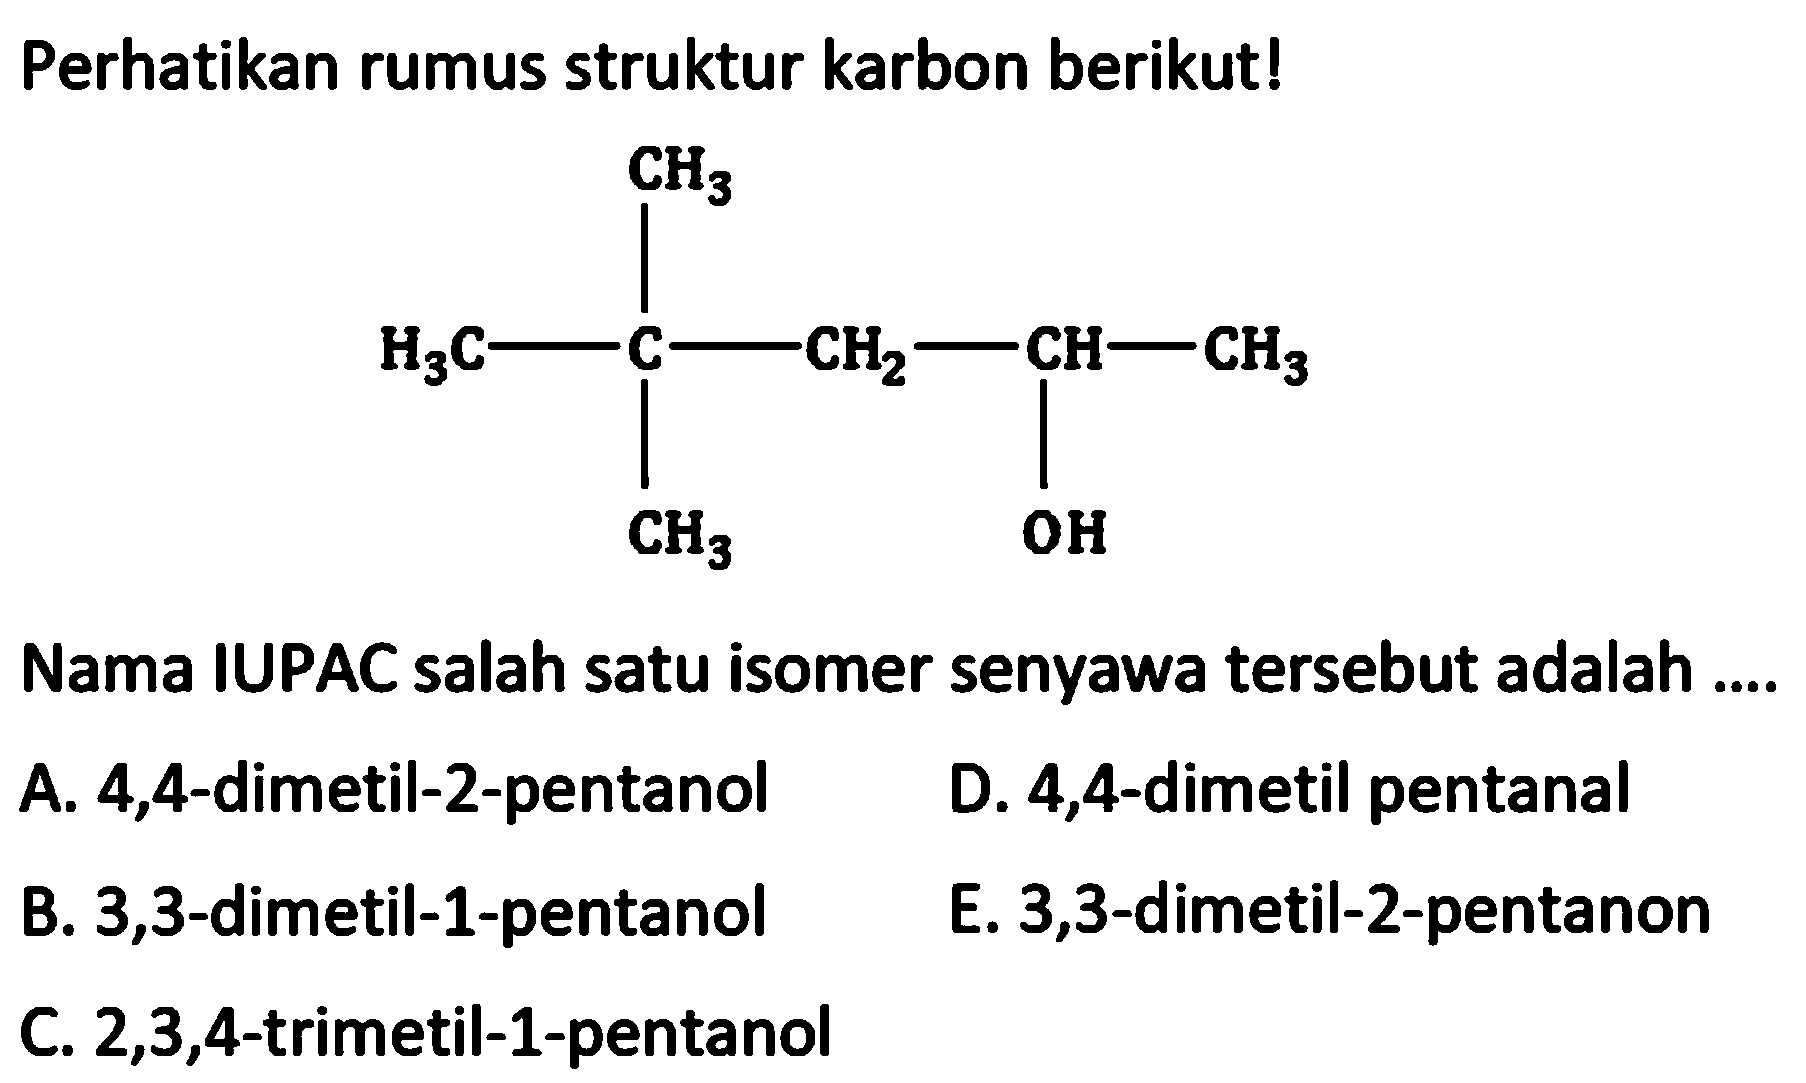 Perhatikan rumus struktur karbon berikut! CH3 H3C-C-CH2-CH-CH3 CH3 OH Nama IUPAC salah satu isomer senyawa tersebut adalah ....